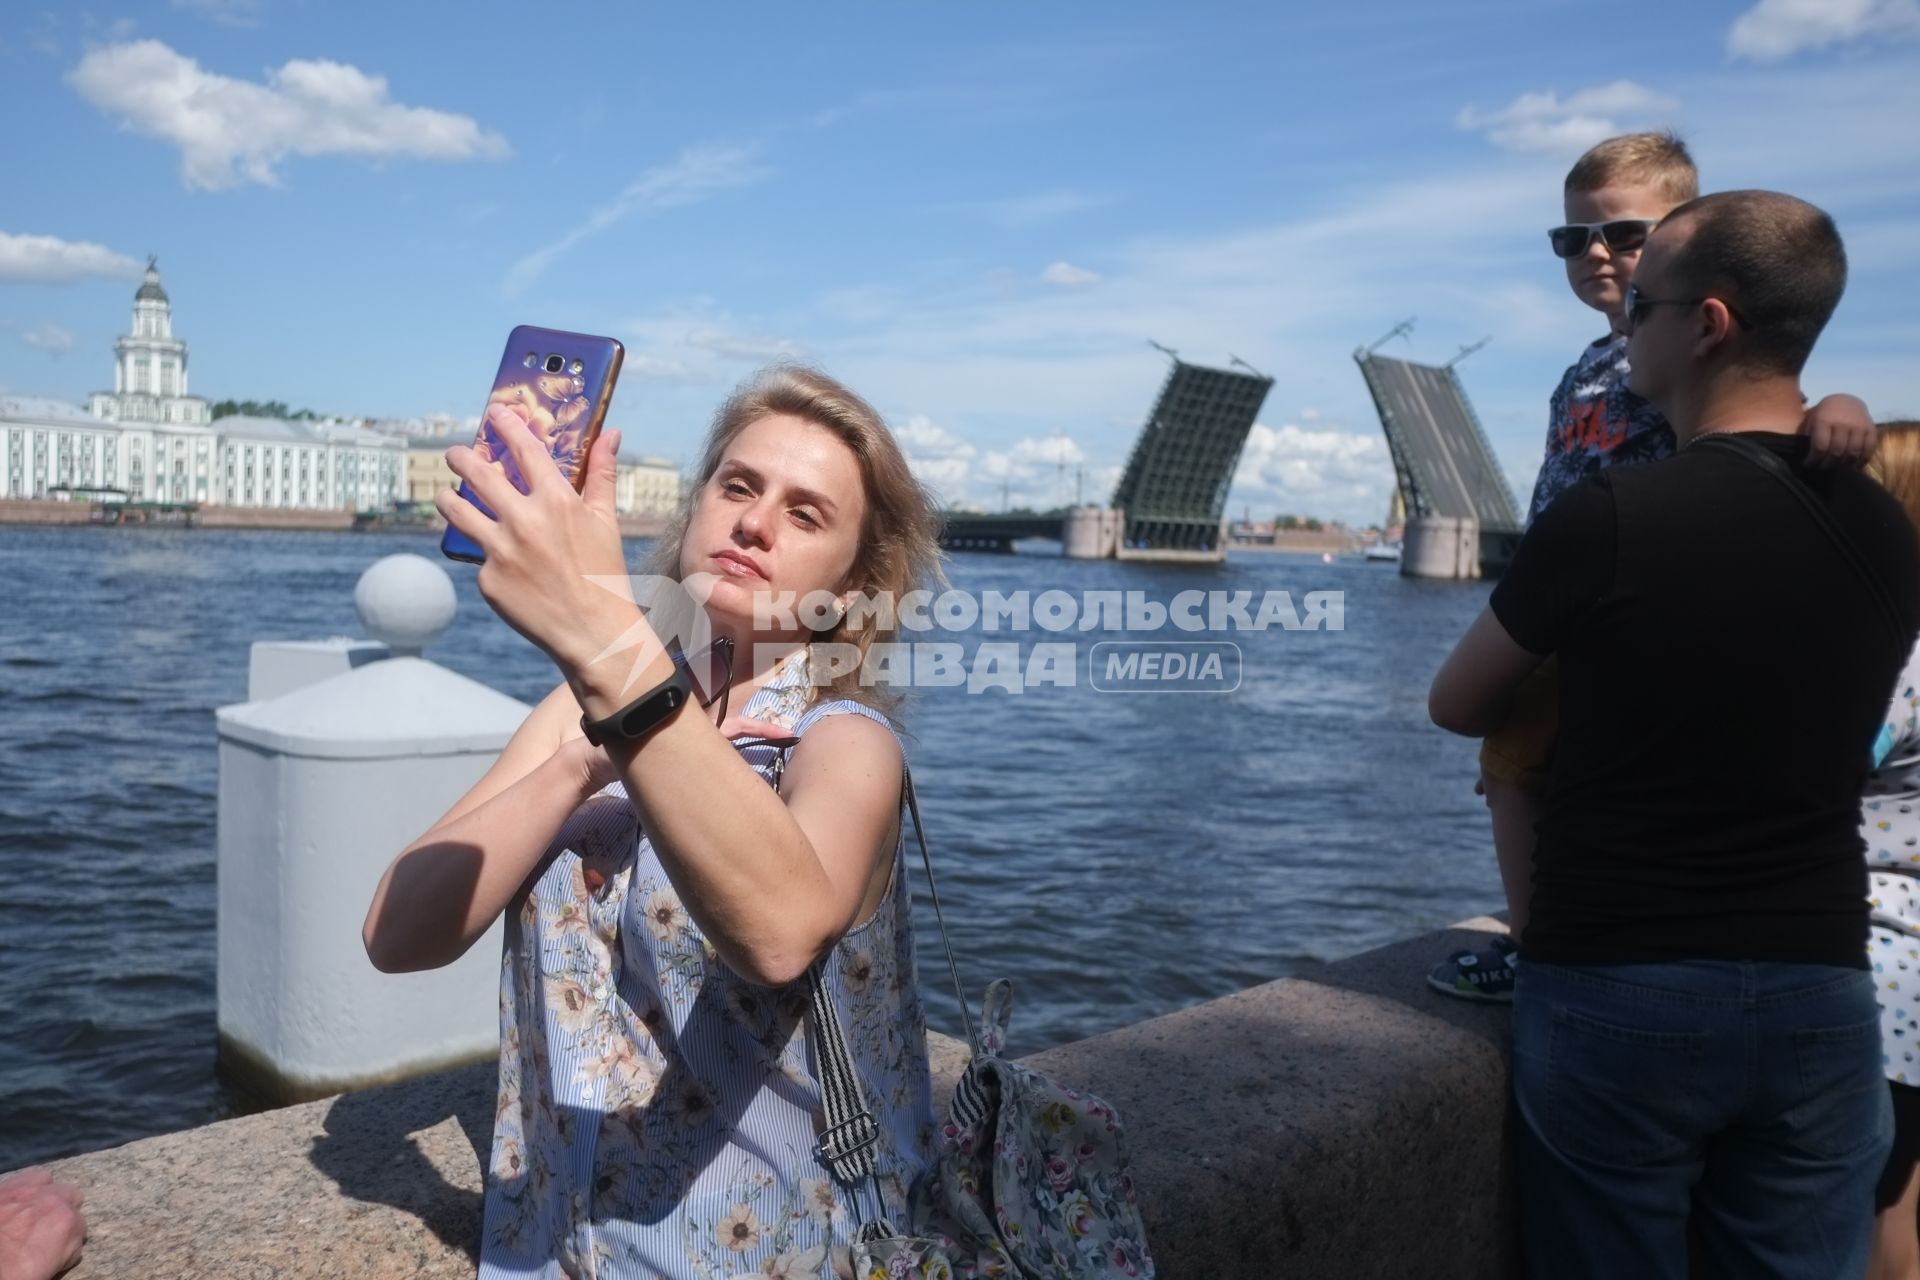 Санкт-Петербург. Туристы фотографируют развод мостов.